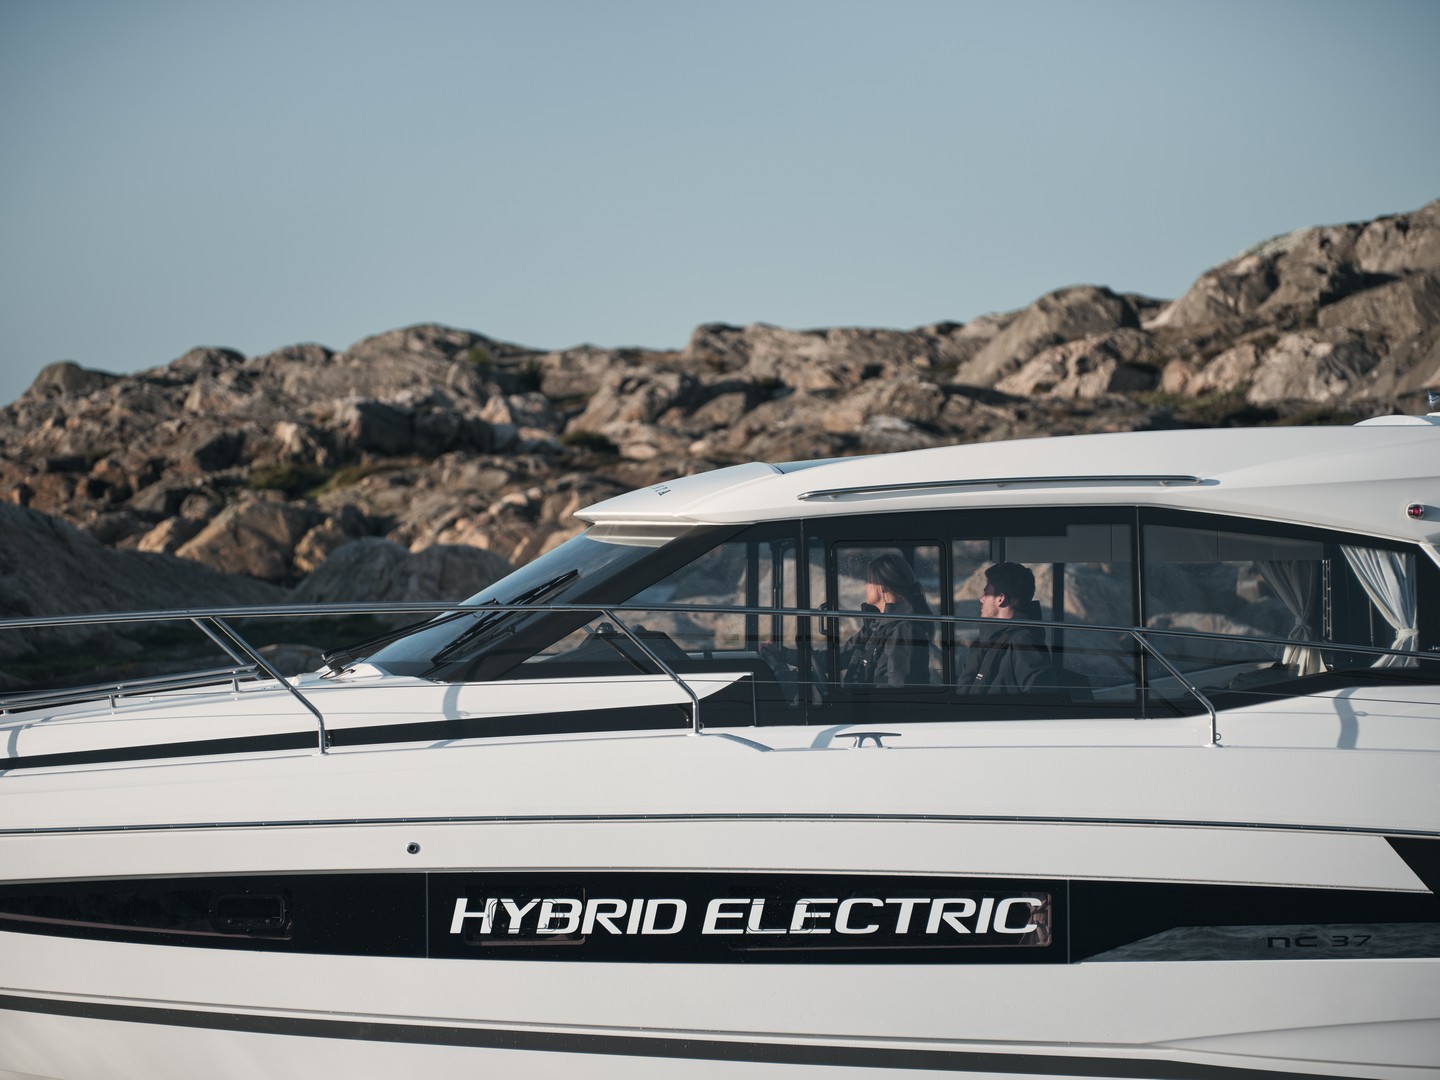 Anteprima mondiale: il nostro test sul nuovo sistema ibrido Volvo Penta Plug-in Parallel Hybrid, come funziona e come va